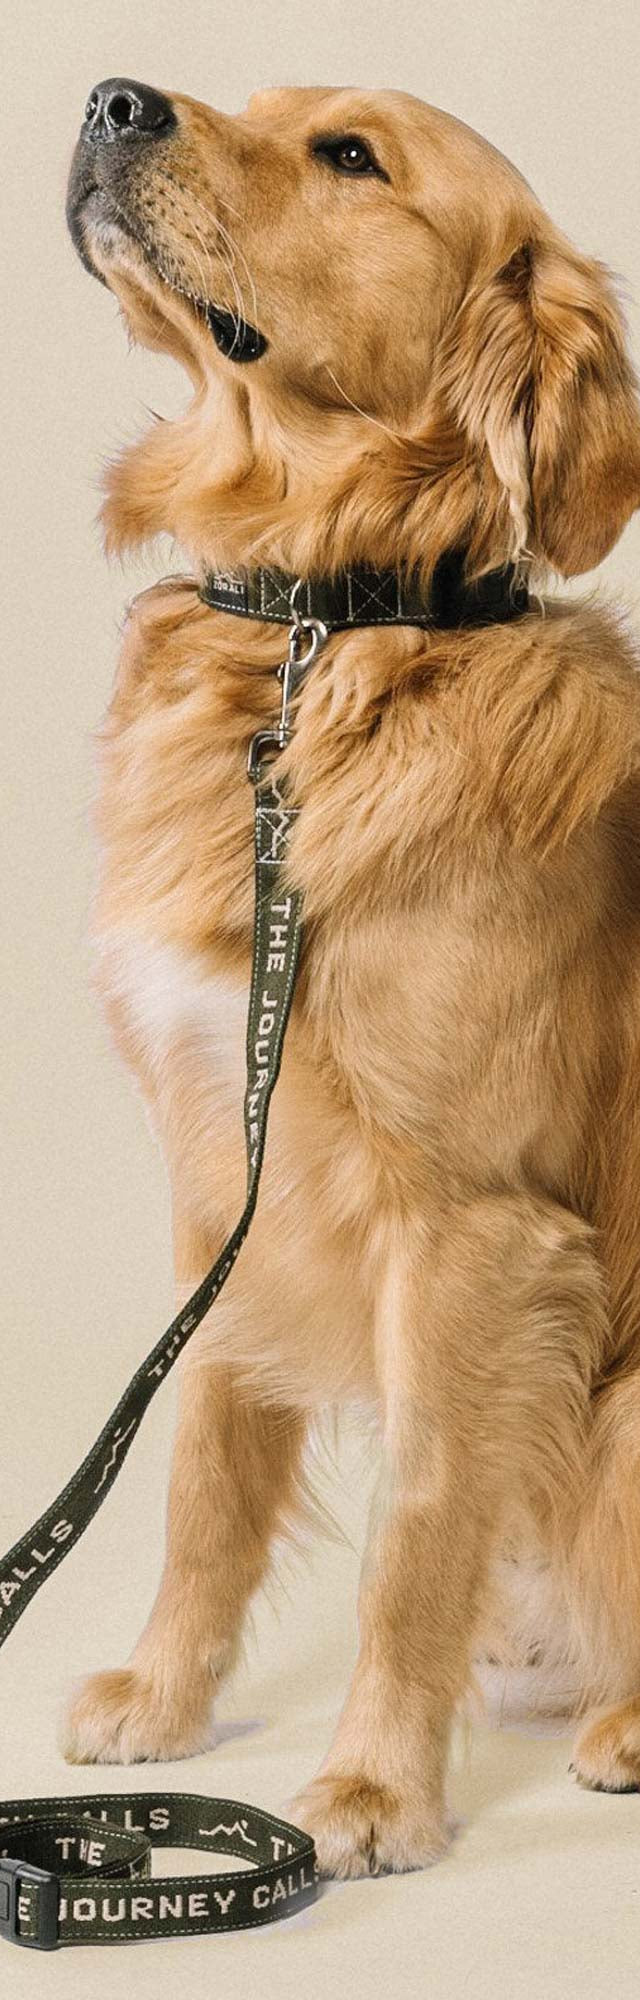 Downward Dog Collar